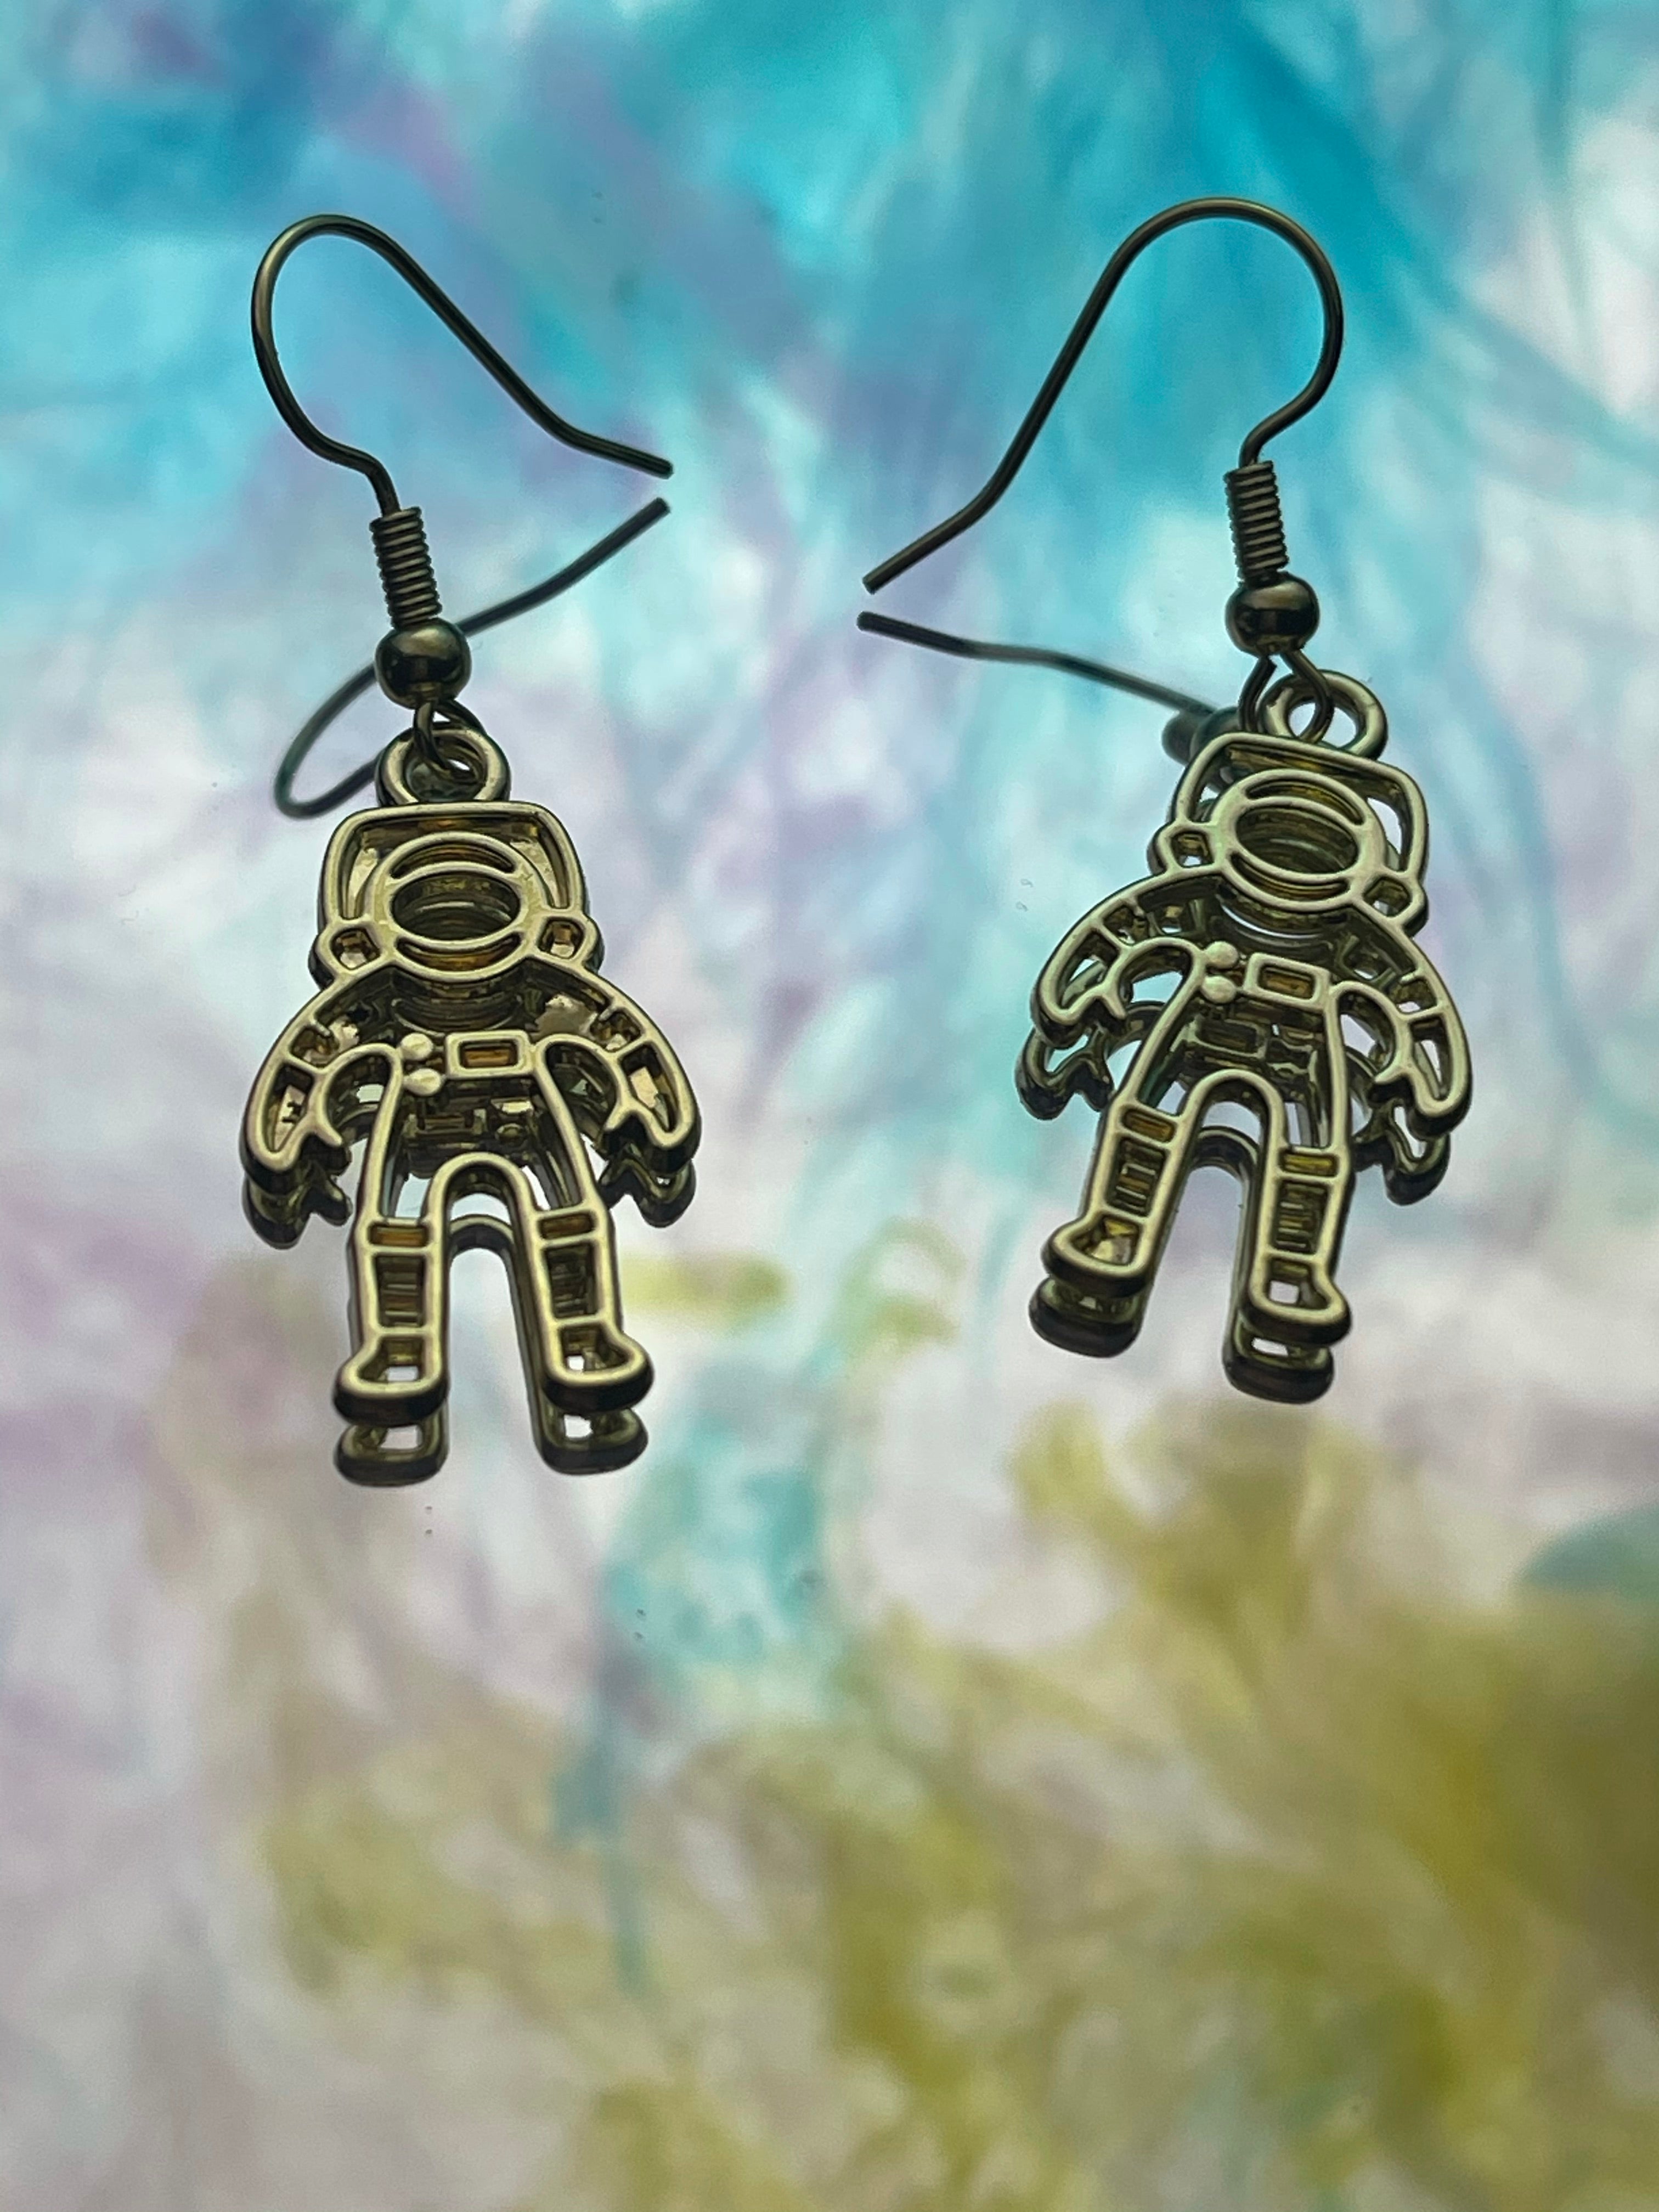 Astronaut Earrings